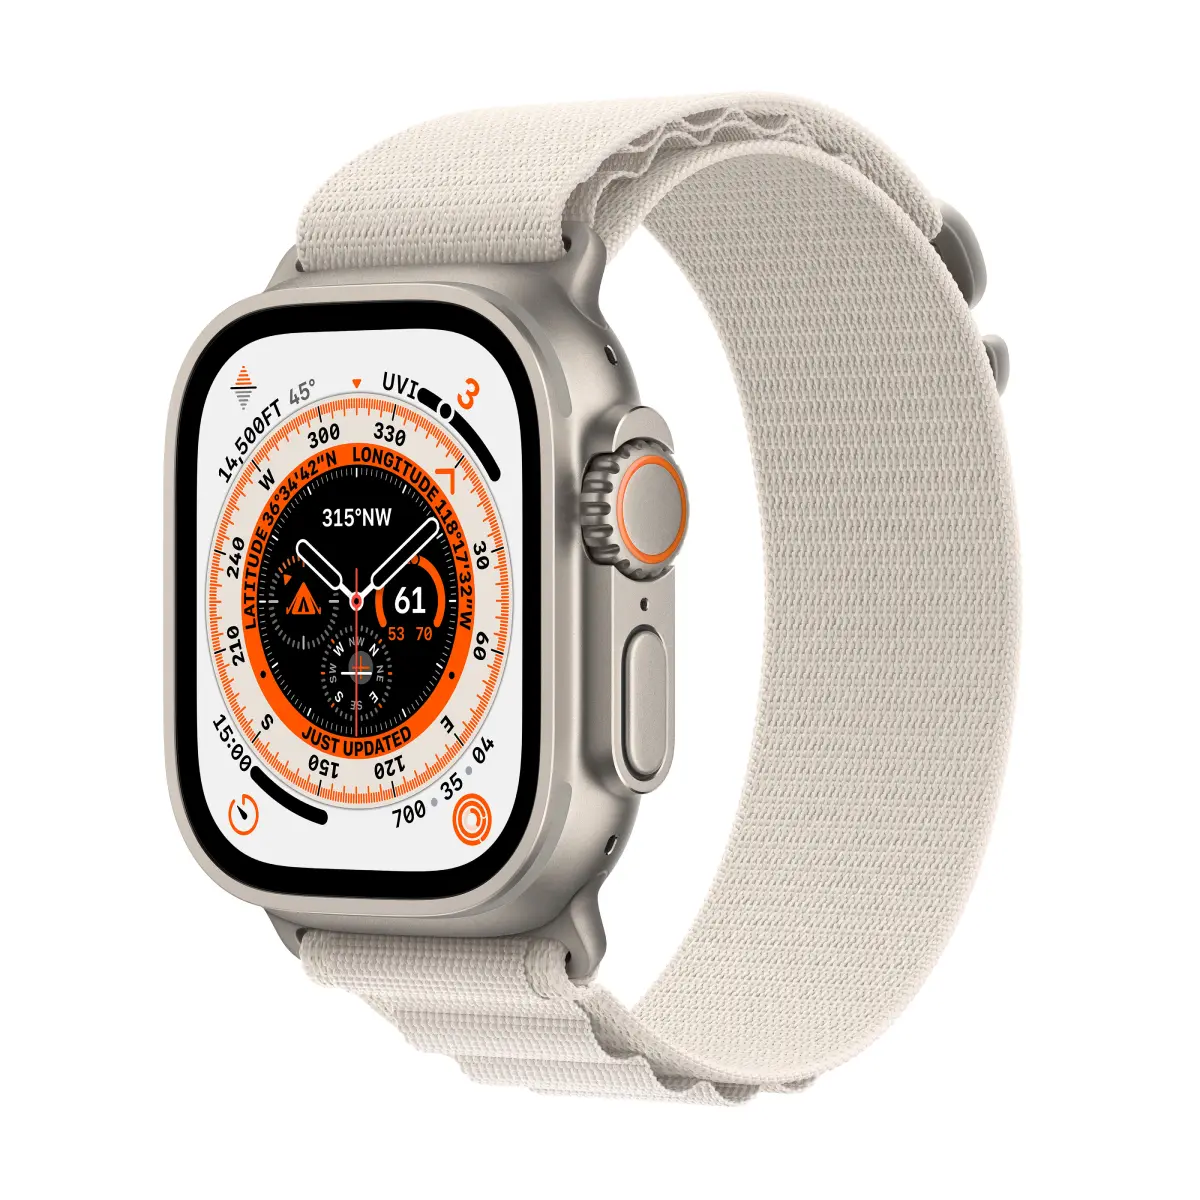 Exploring the Water-Resistant Marvel: Apple Watch in Aquatic Adventures